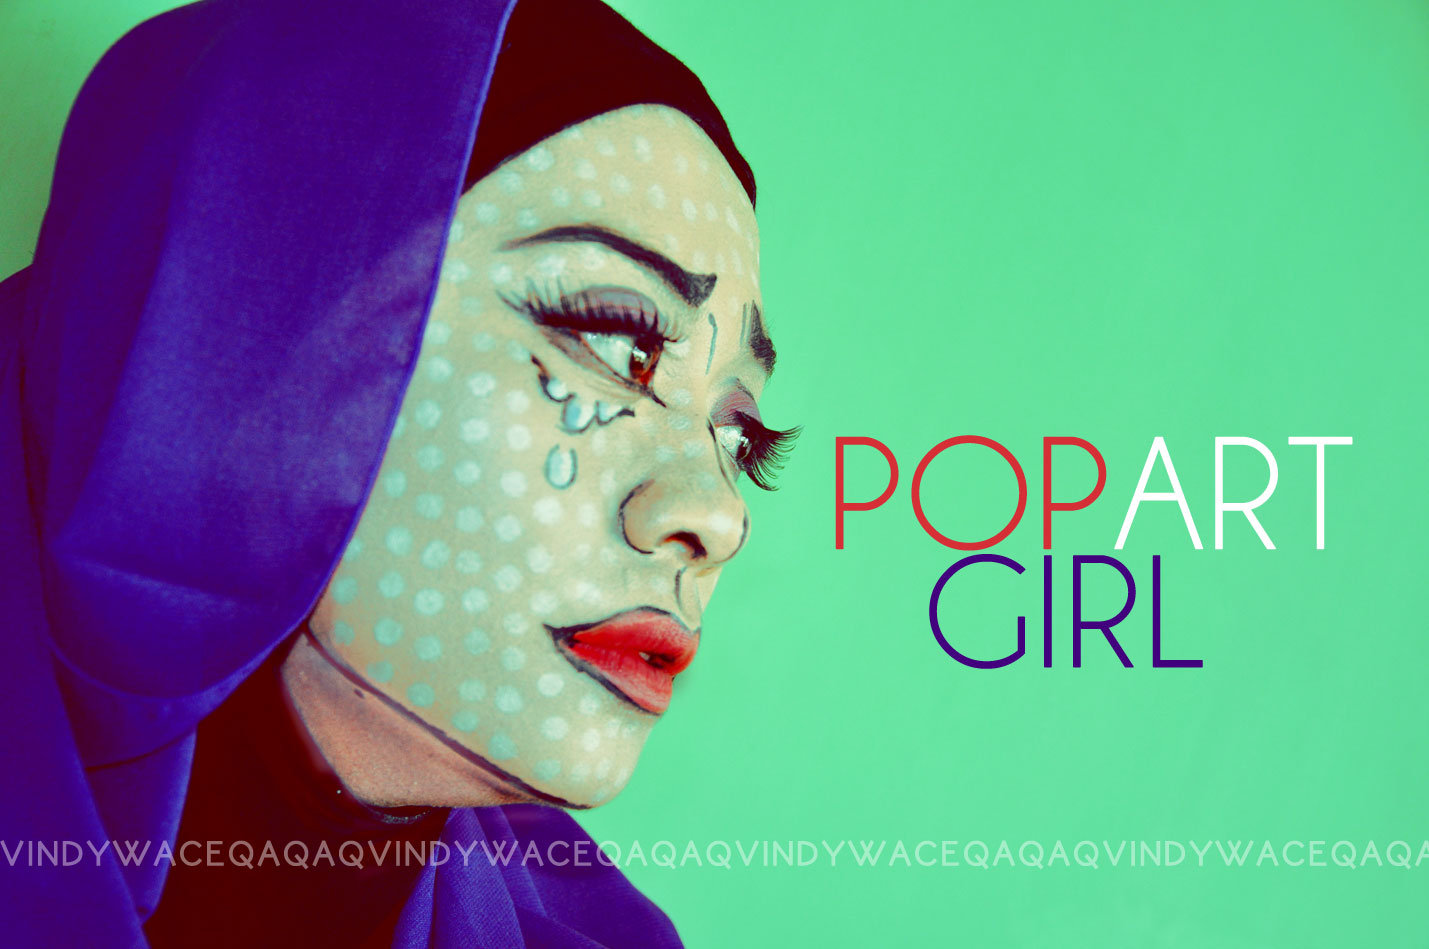 Ini Vindy Yang Ajaib: FOTD : Pop Art Comic Girl Makeup